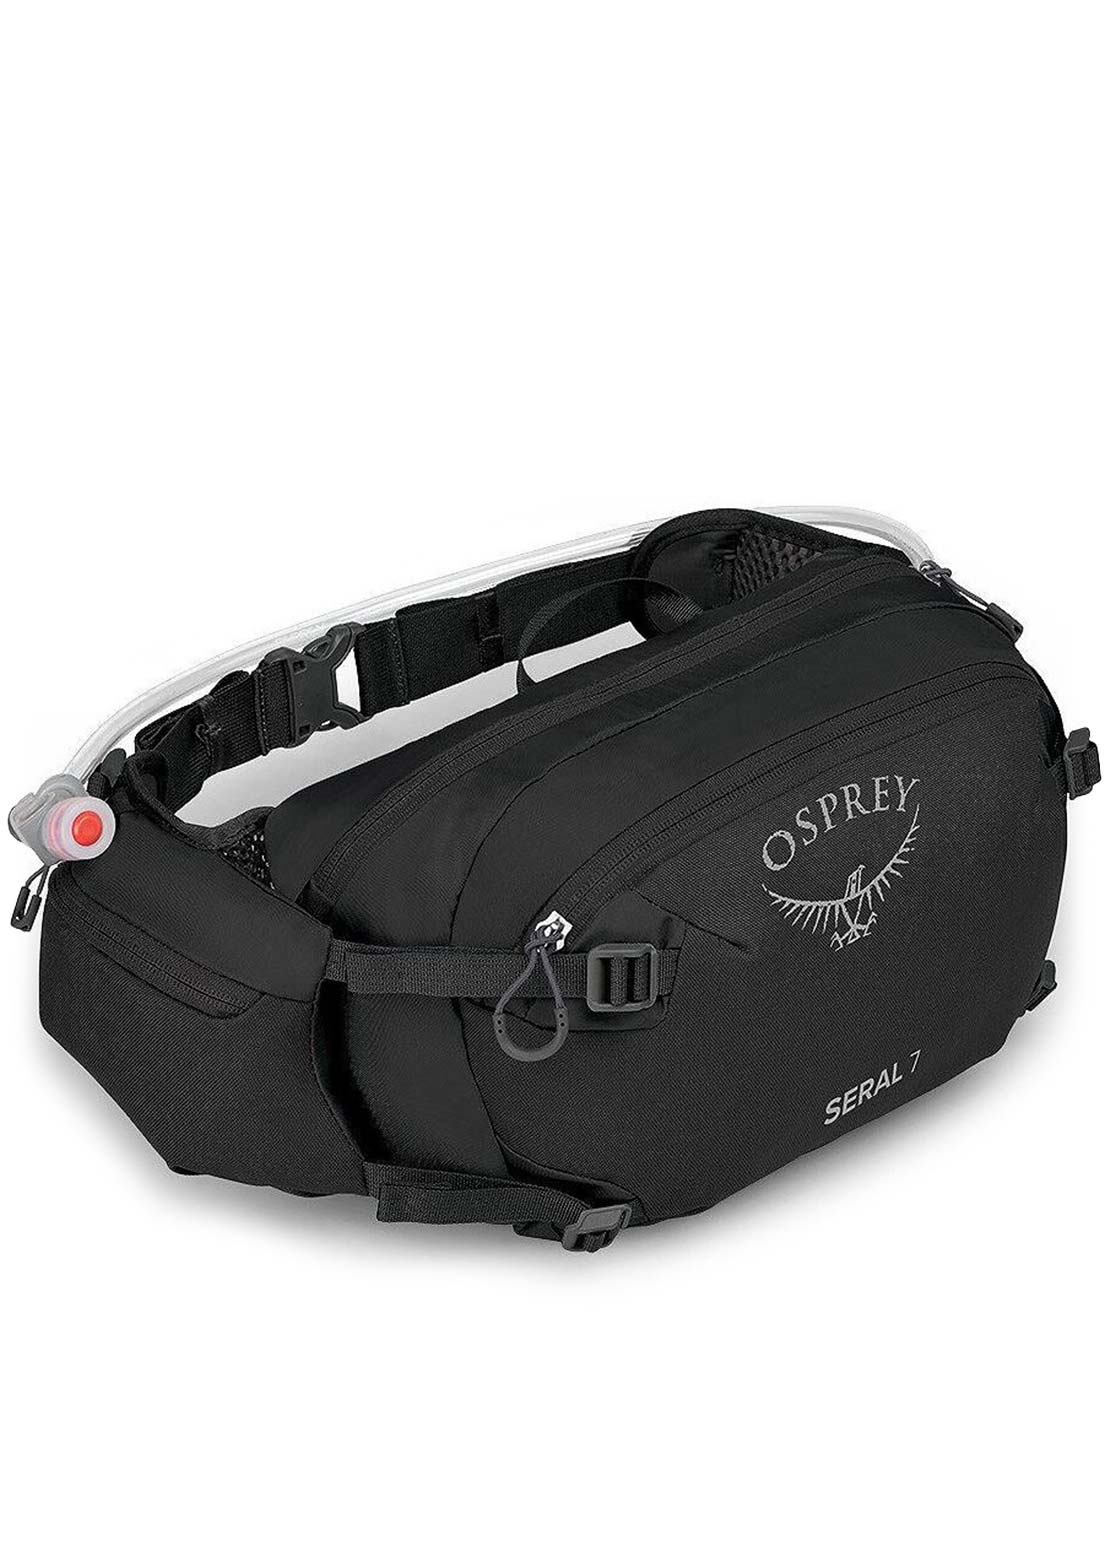 Osprey Seral 7 Bike Pack with Reservoir Black